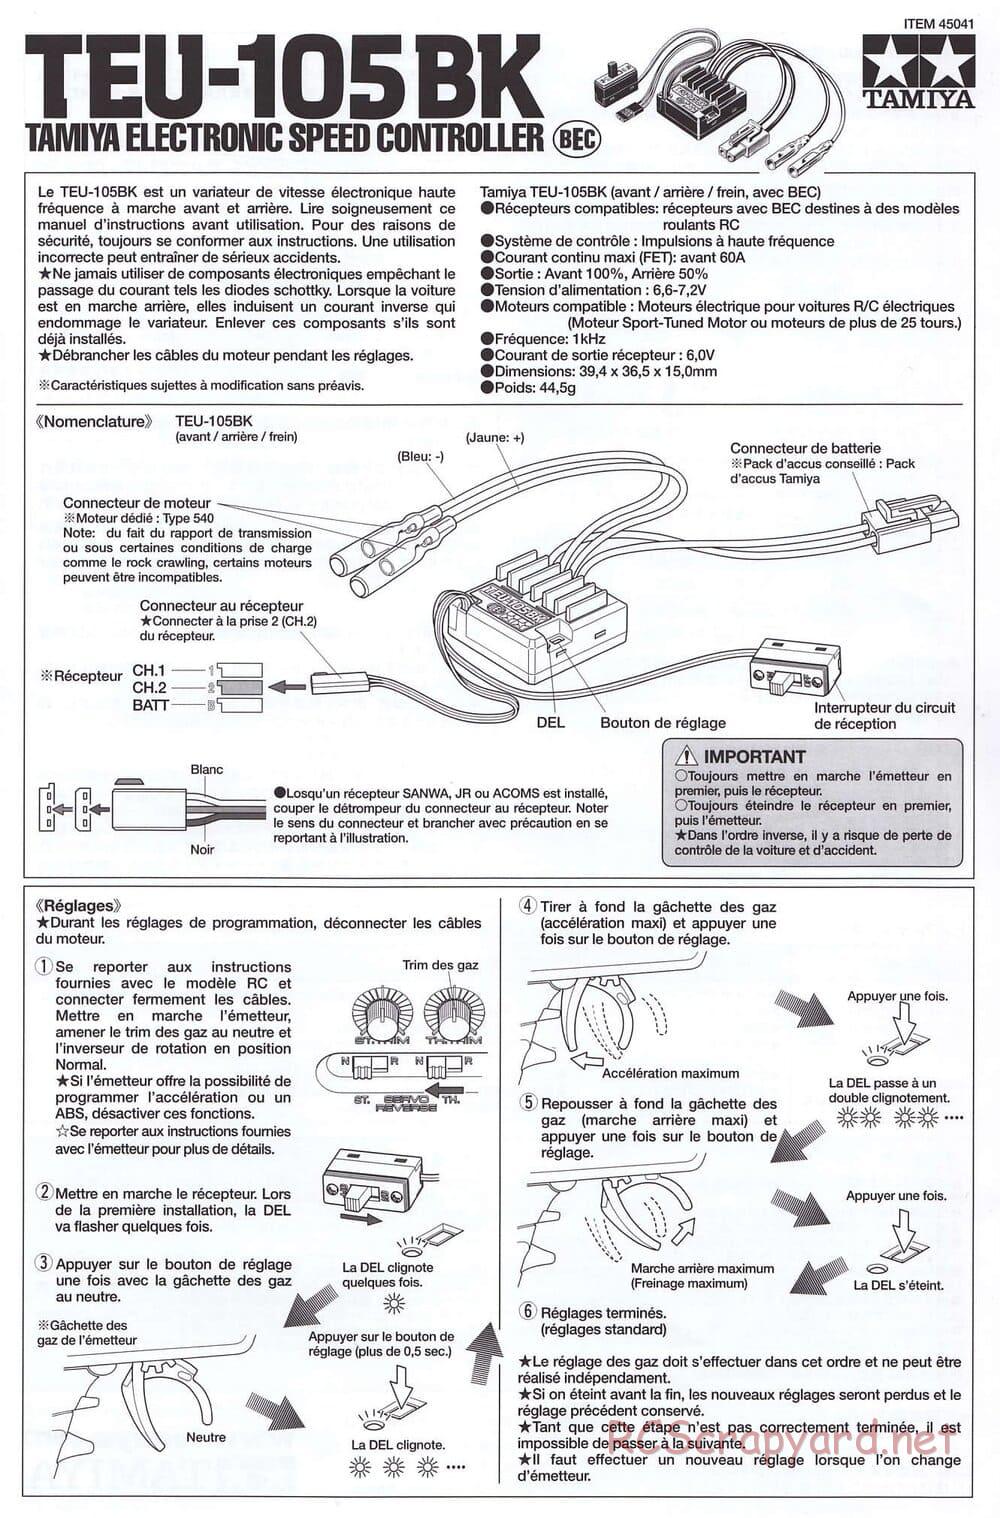 Tamiya - SA TT-02 ESC - Manual - Page 3